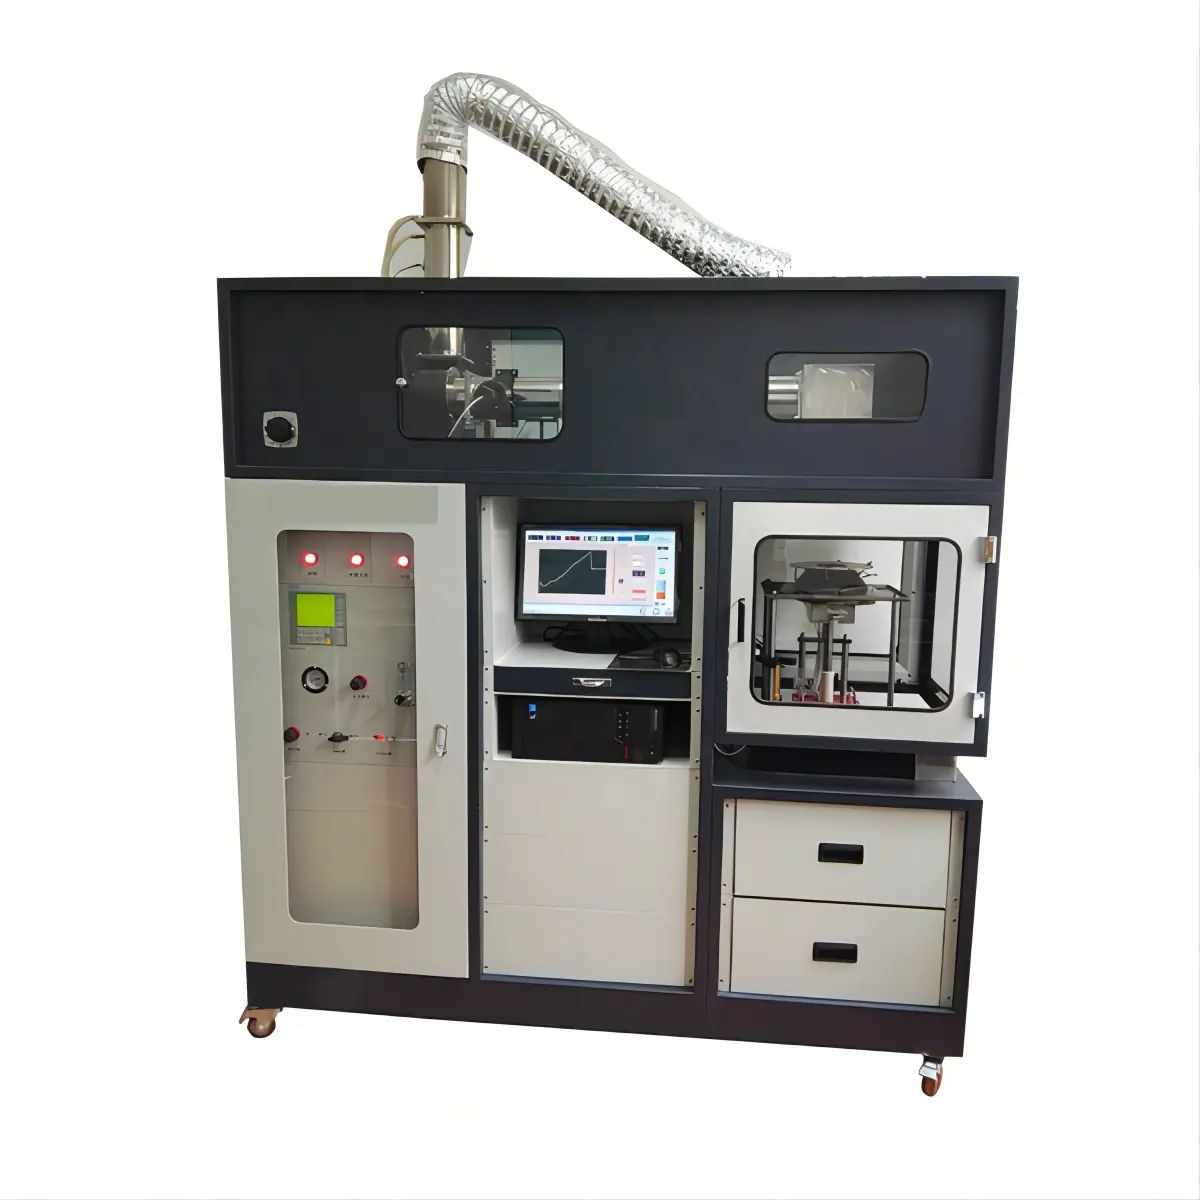 Thiết bị kiểm tra GA-4201 ISO 5660 thử nghiệm detercter Cone calorimeter dụng cụ đo lường thiết bị để kiểm tra